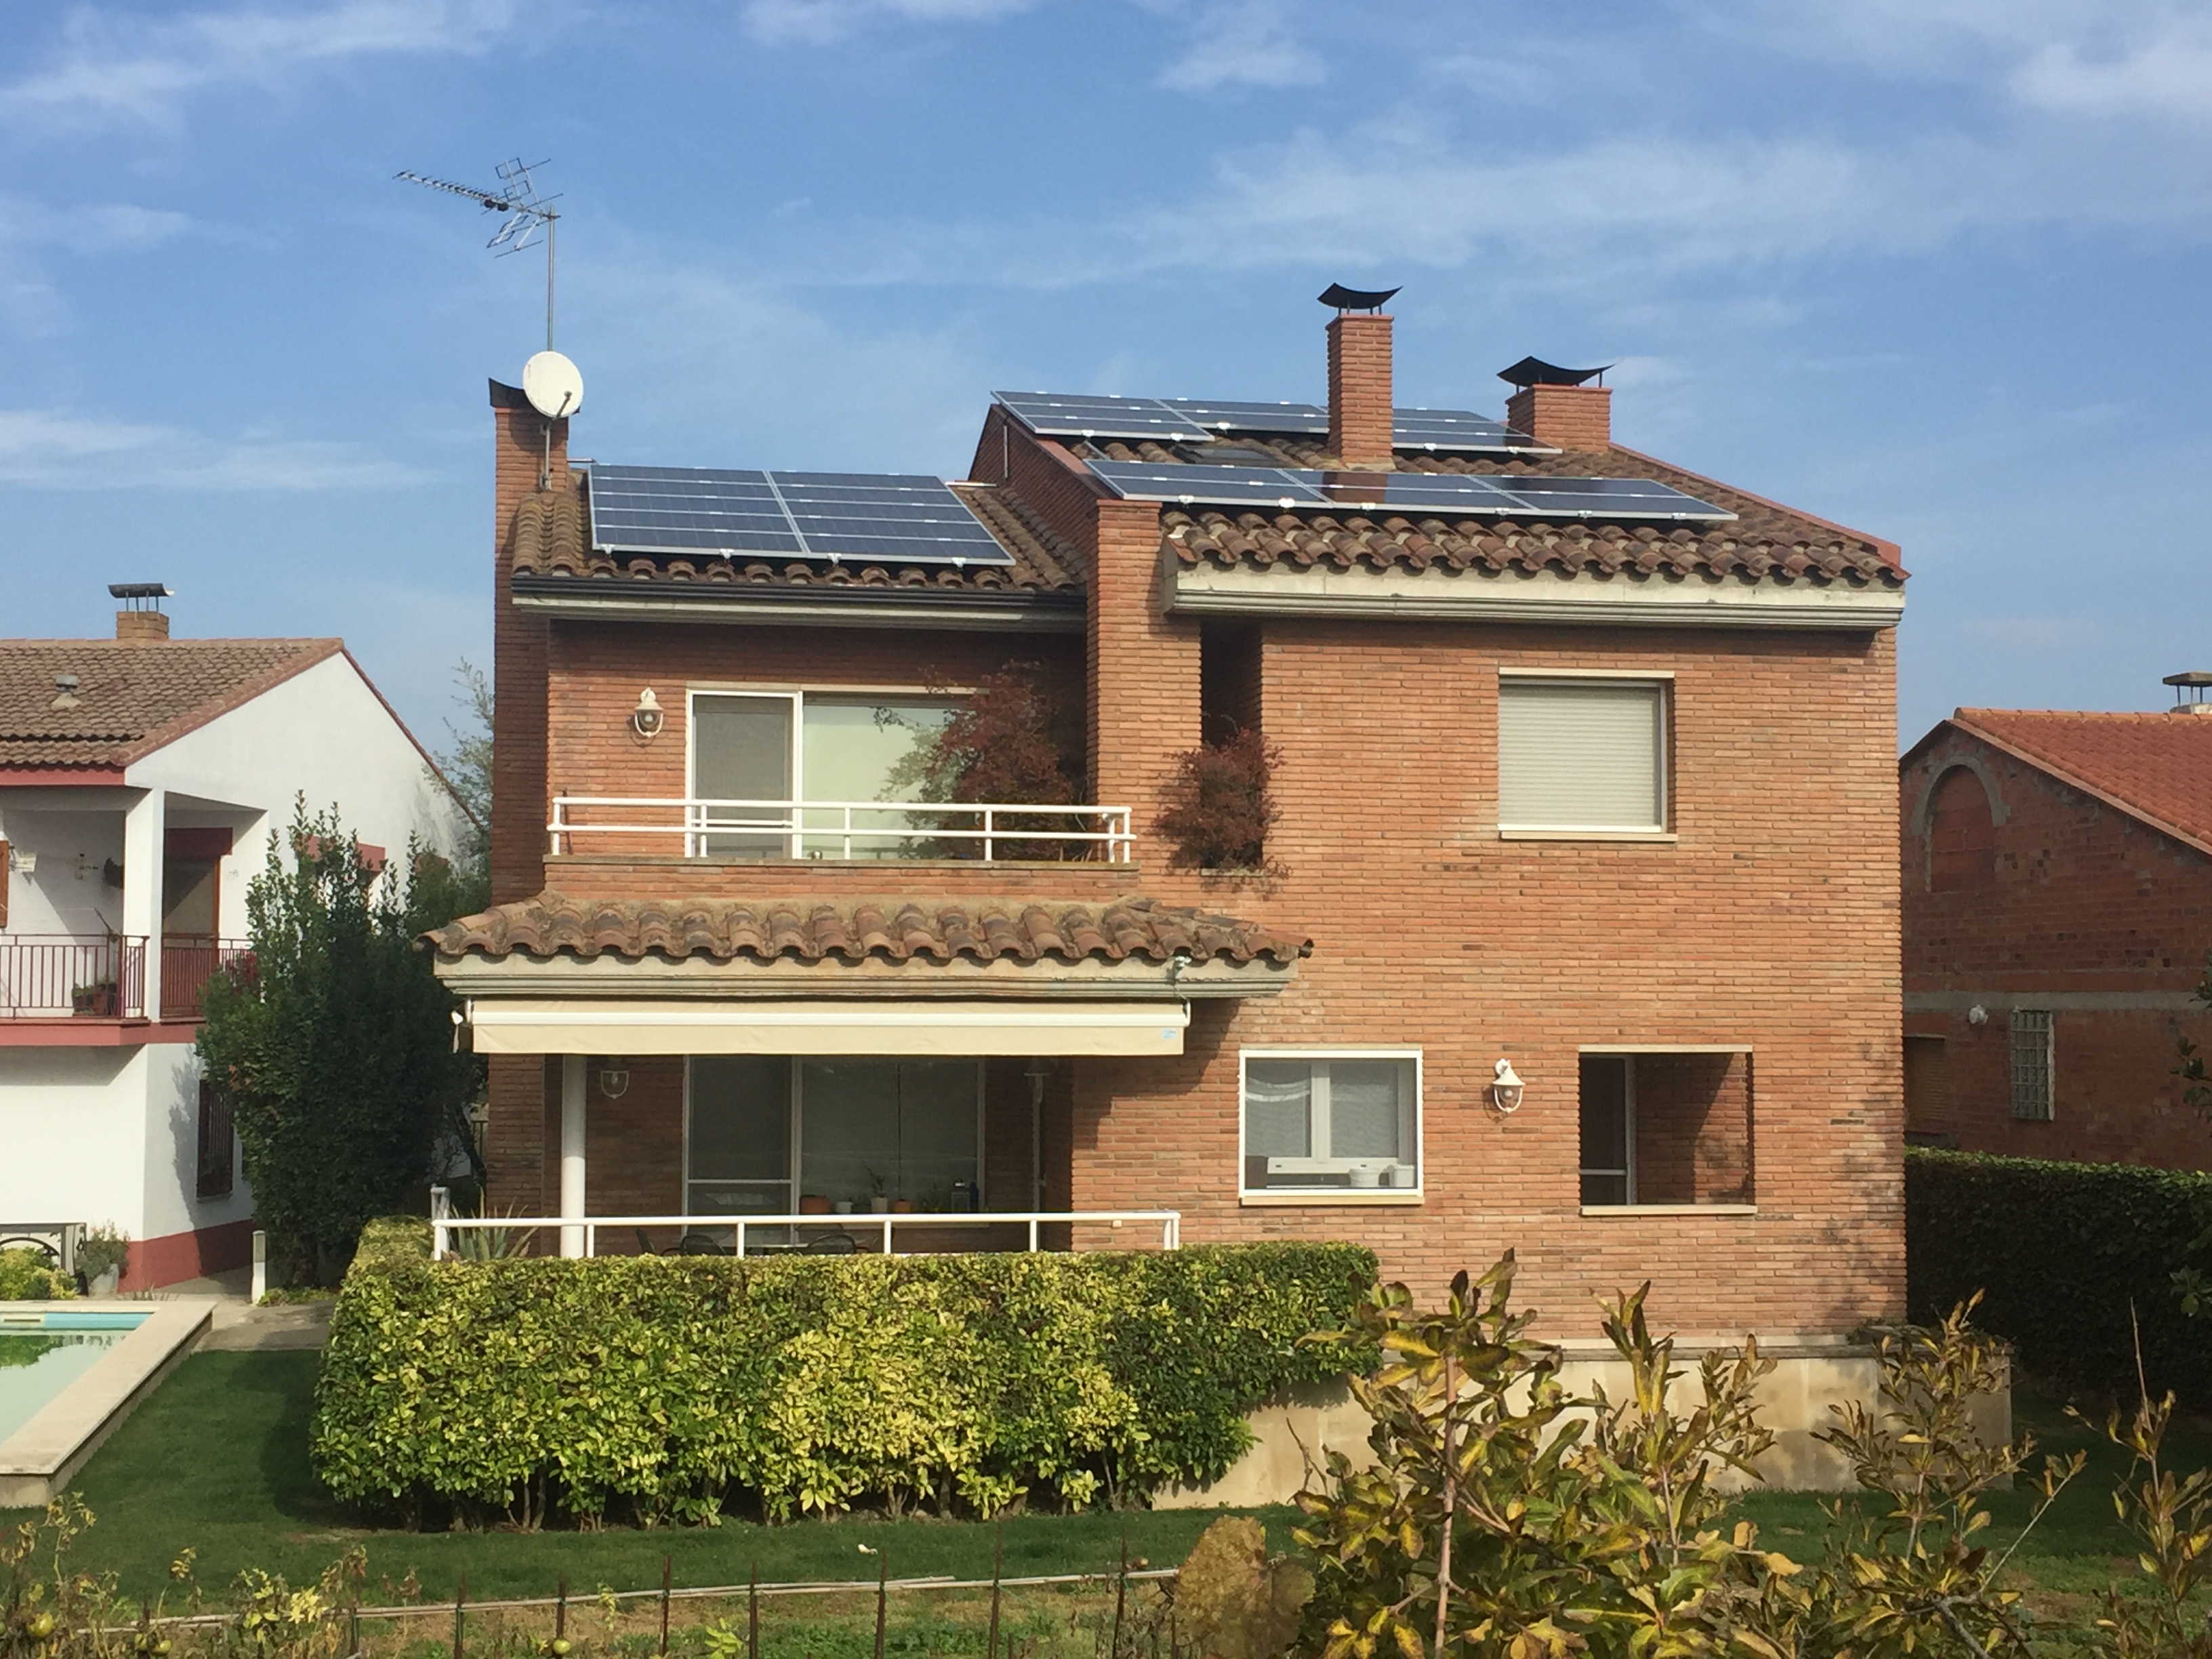 vivienda unifamiliar con tejado lleno de placas solares fotovoltaicas instaladas por Jorfe